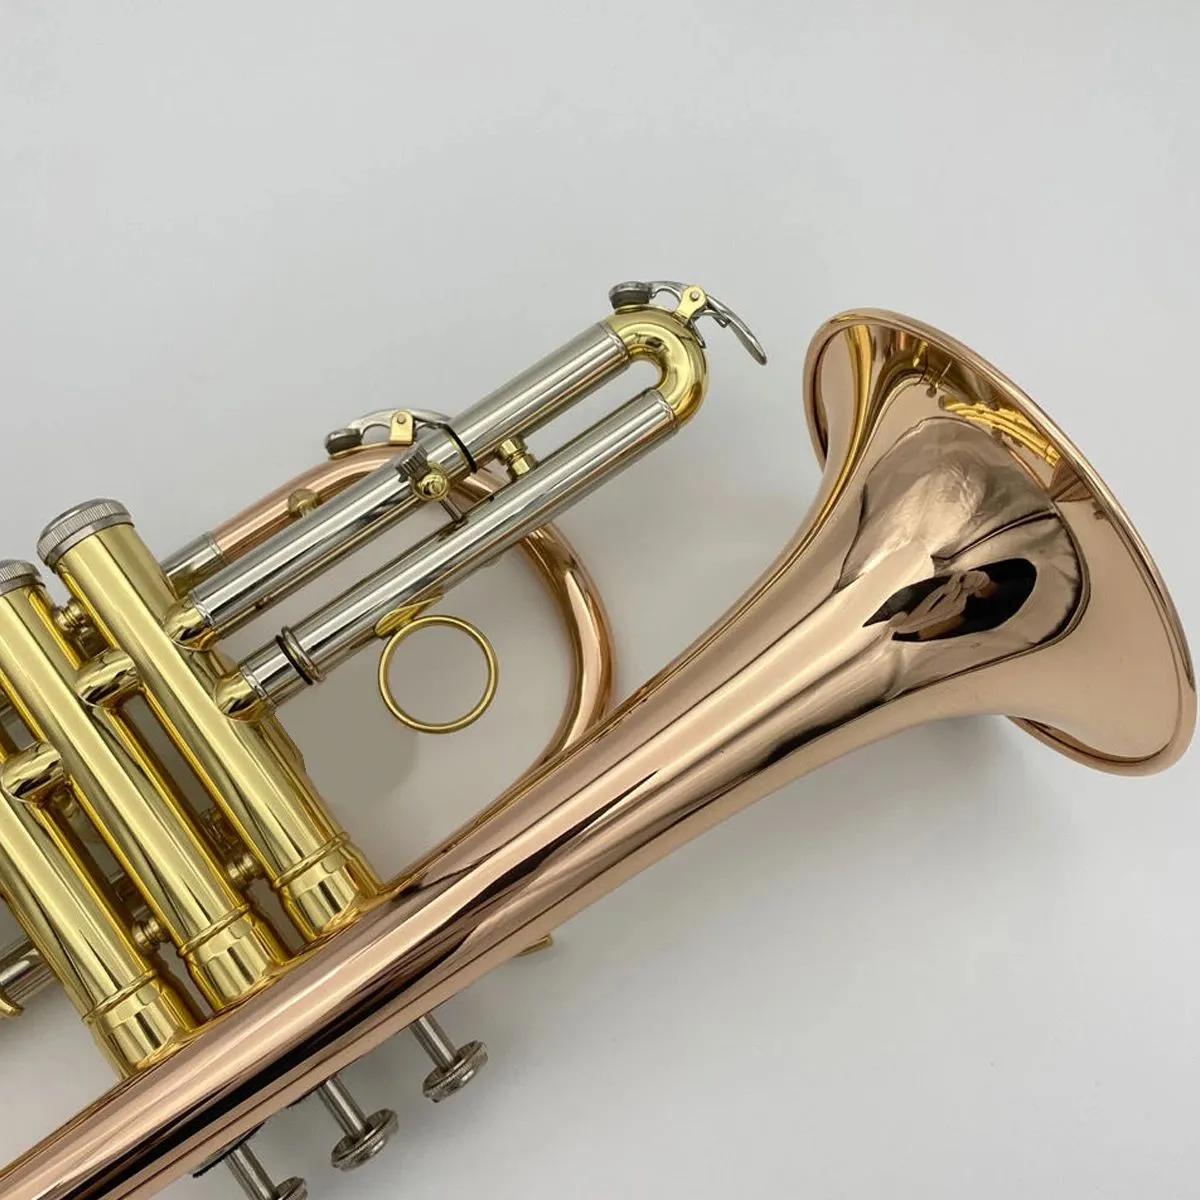 Strumento jazz corno a tromba con tono professionale prodotto in bronzo fosforoso di alta qualità in si bemolle